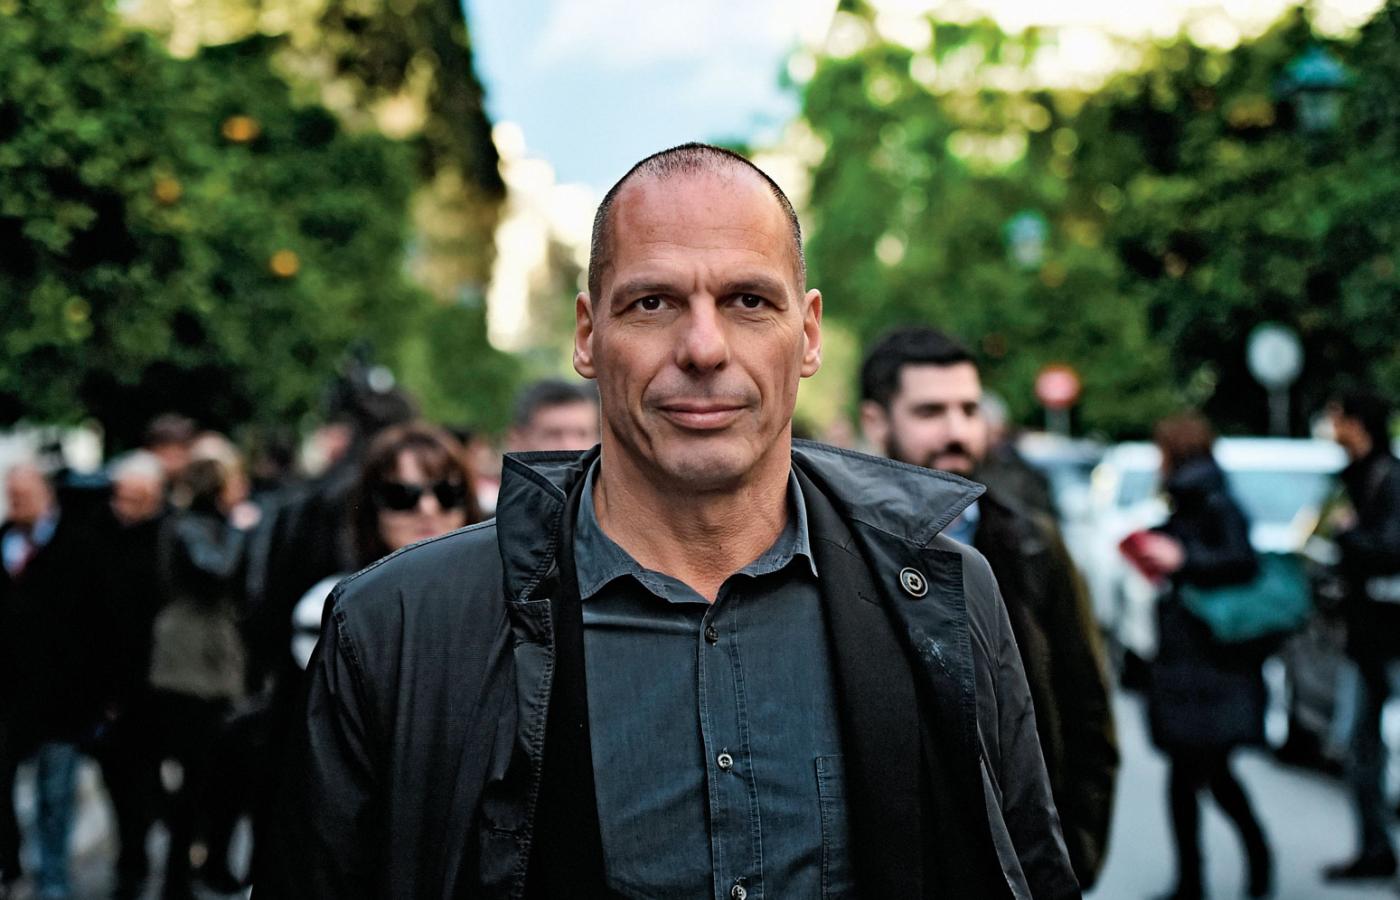 Janis Waroufakis, były minister finansów Grecji.